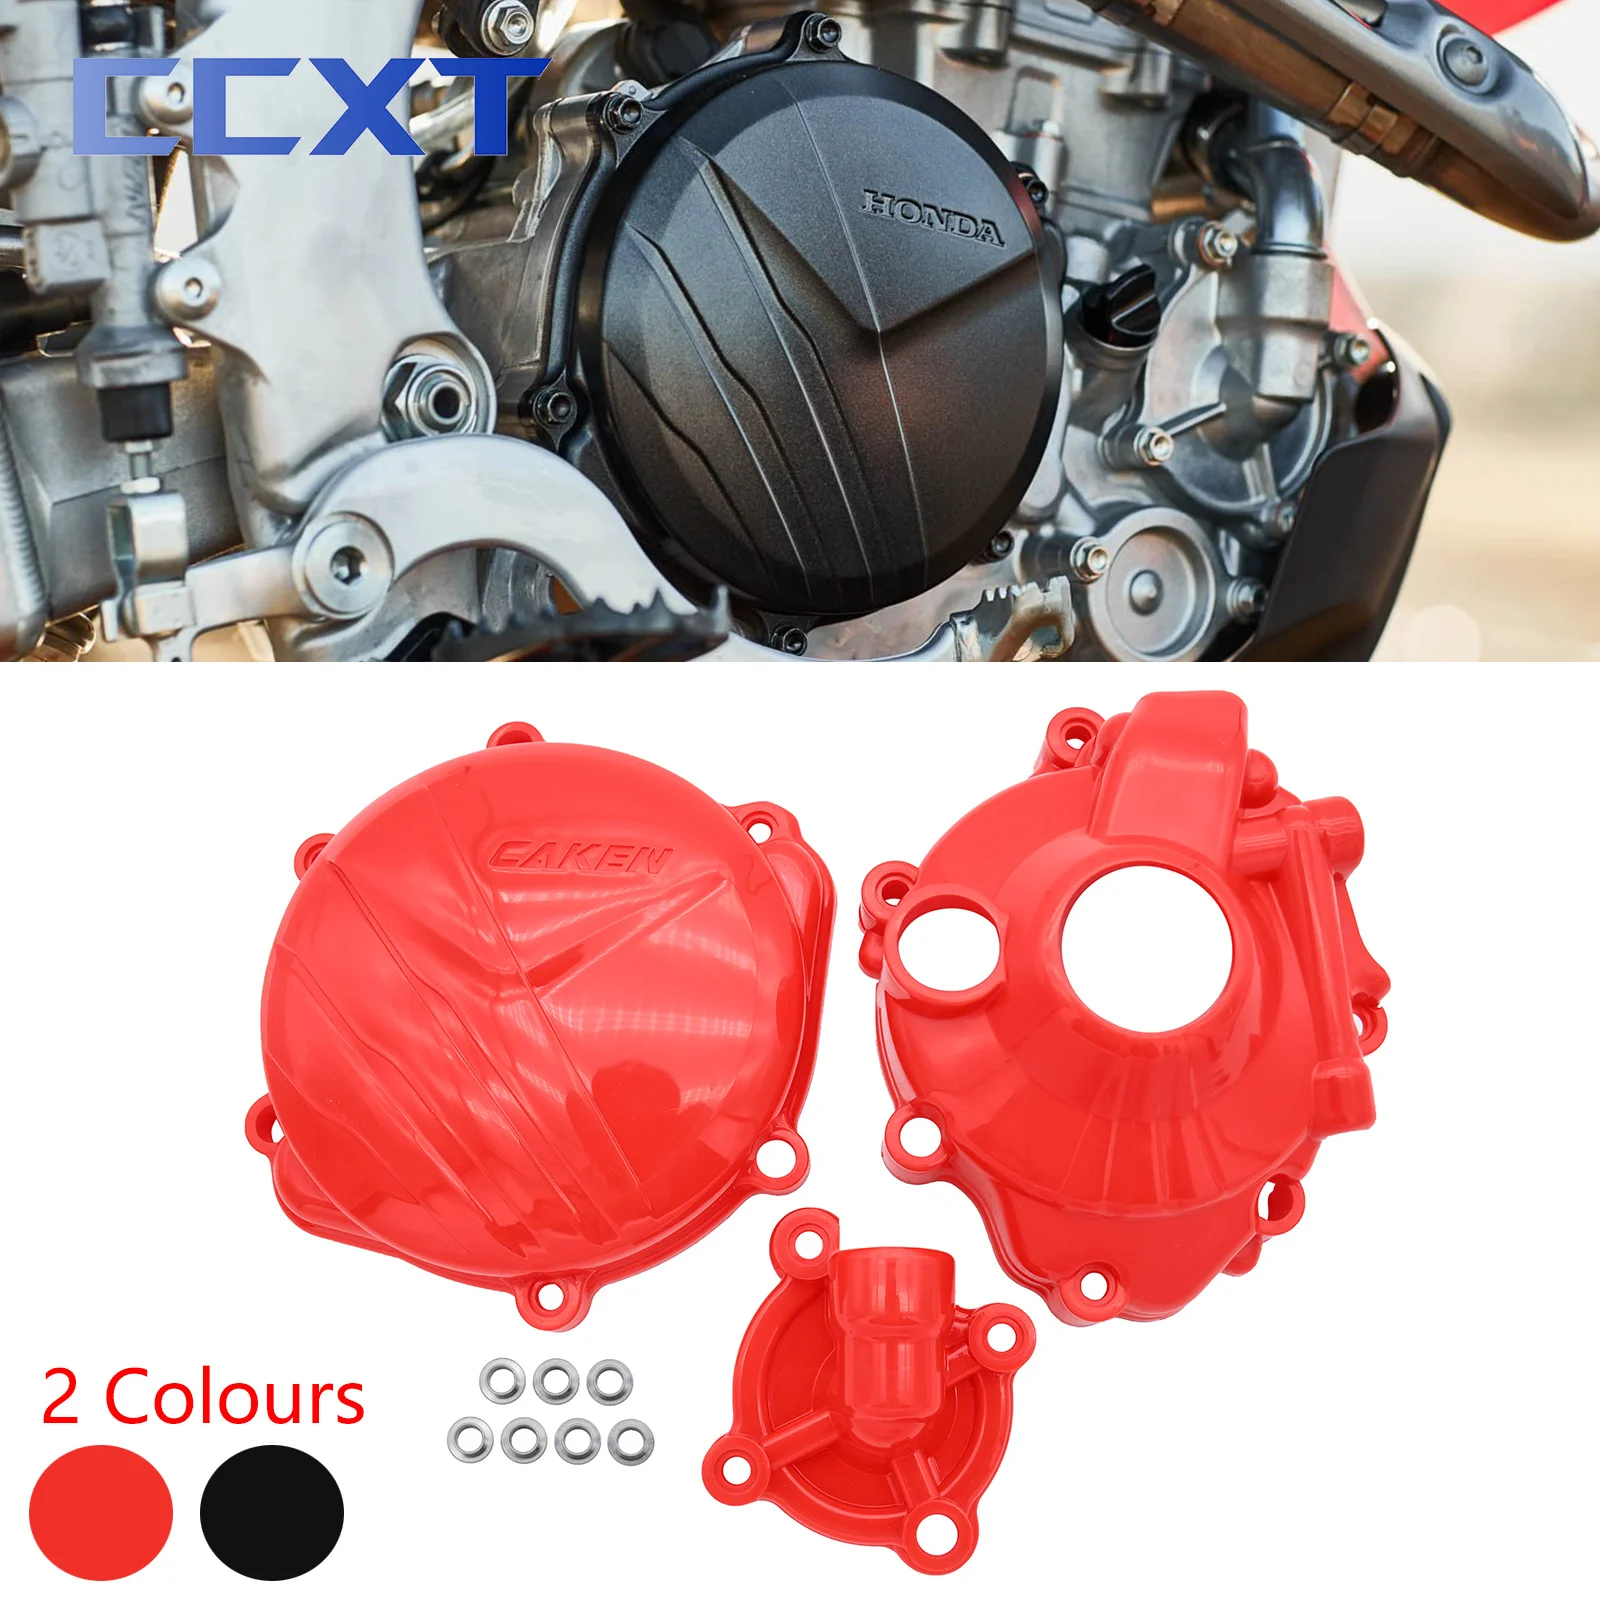  Защита зажигания мотоцикла Крышка водяного насоса Защита сцепления для Honda CRF250R 2018-2021 CRF250RX 2018-2020 2021 Универсальные детали